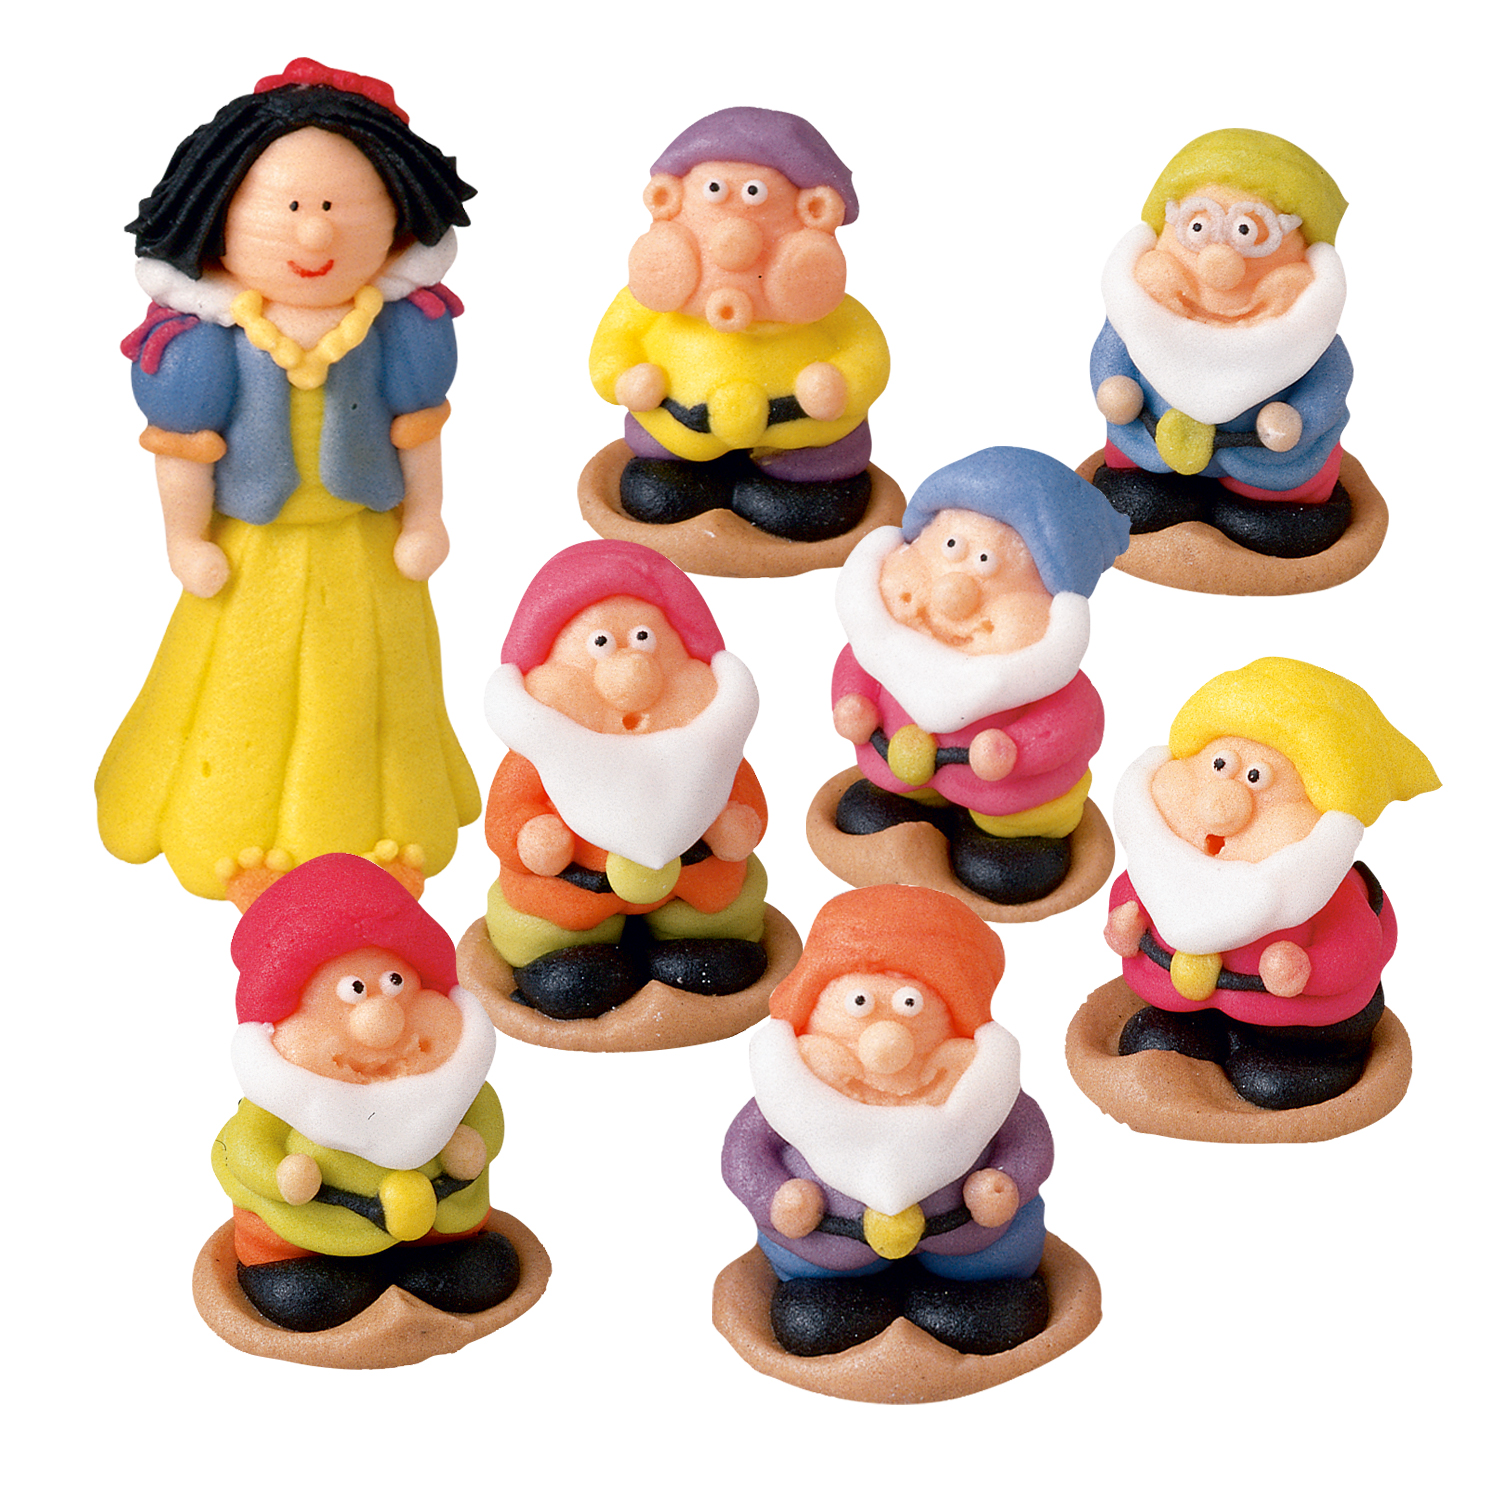 8 Stück Prinzessin Schneewittchen Sieben Zwerge Figuren Figur Kuchen Spielzeug 